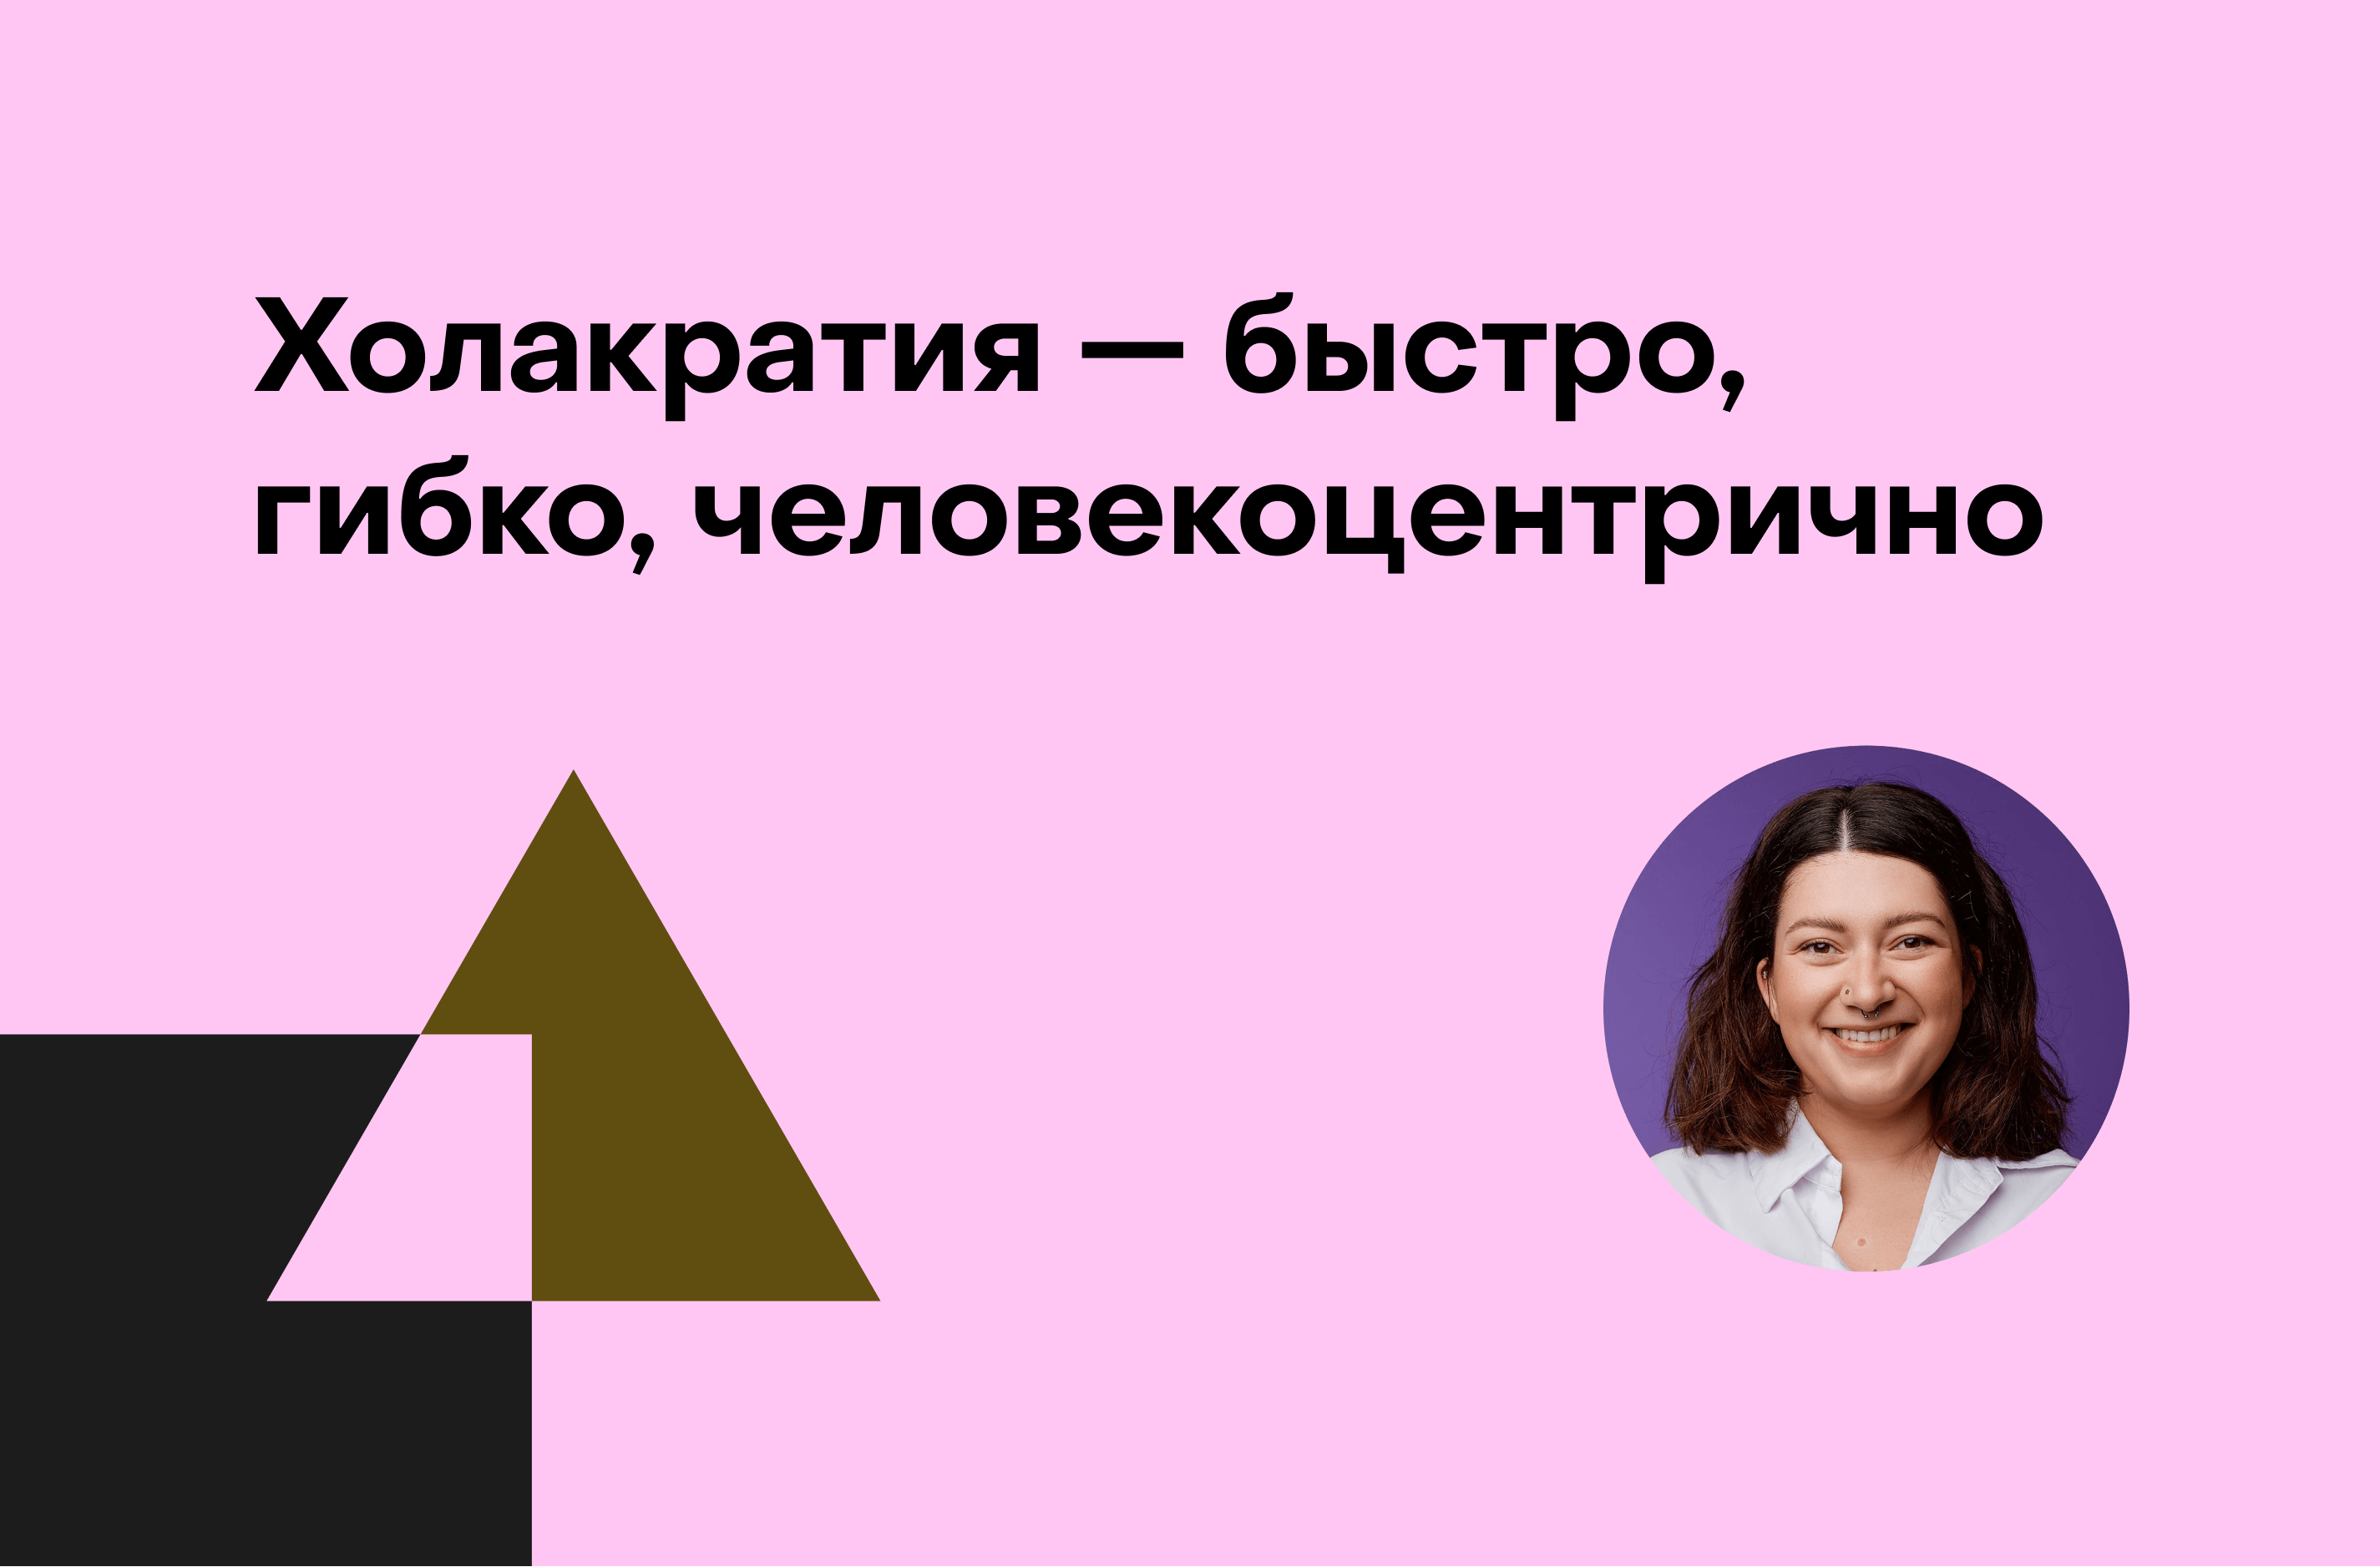 Дарья Боровикова, банк «Точка»: Как построить холакратию в бизнесе